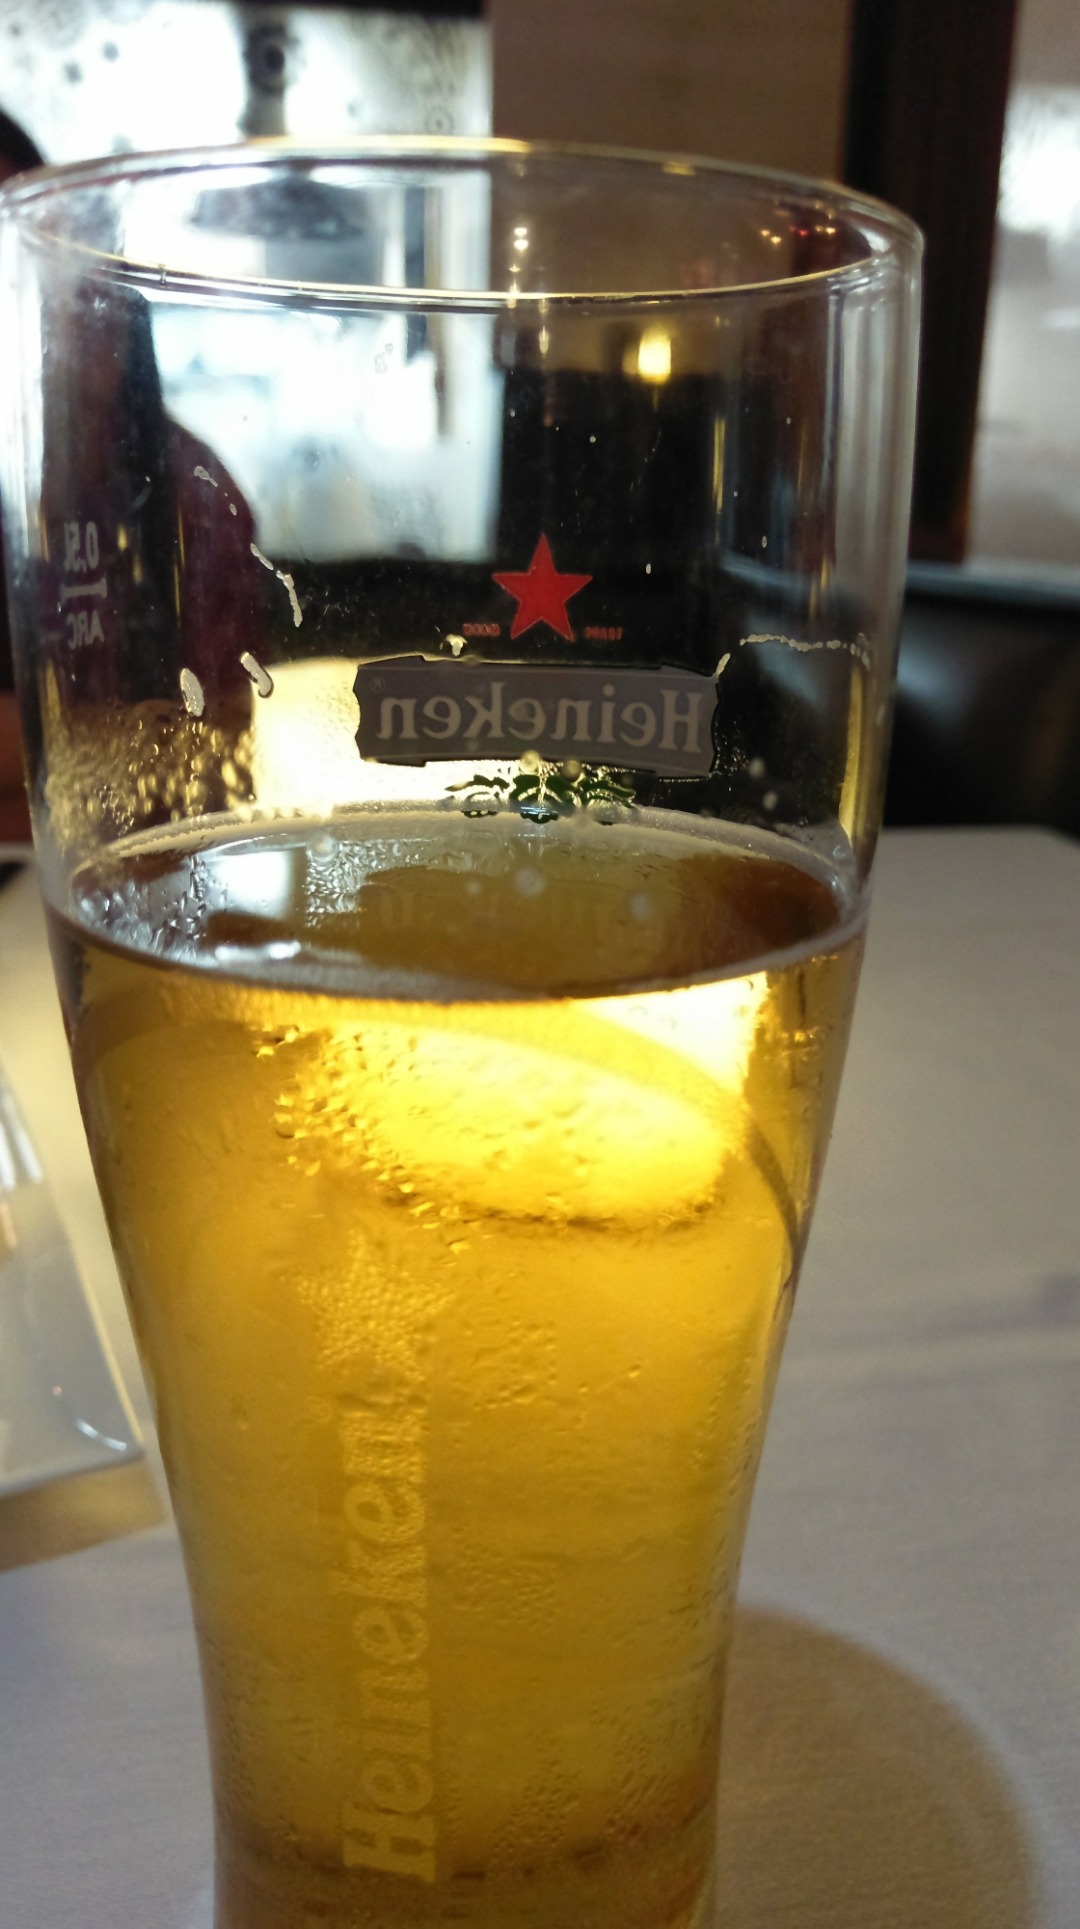 Having chilled beer @ rasoi ramee grand seef. 
#heineken #draughtbeer @ روكا - البحرين